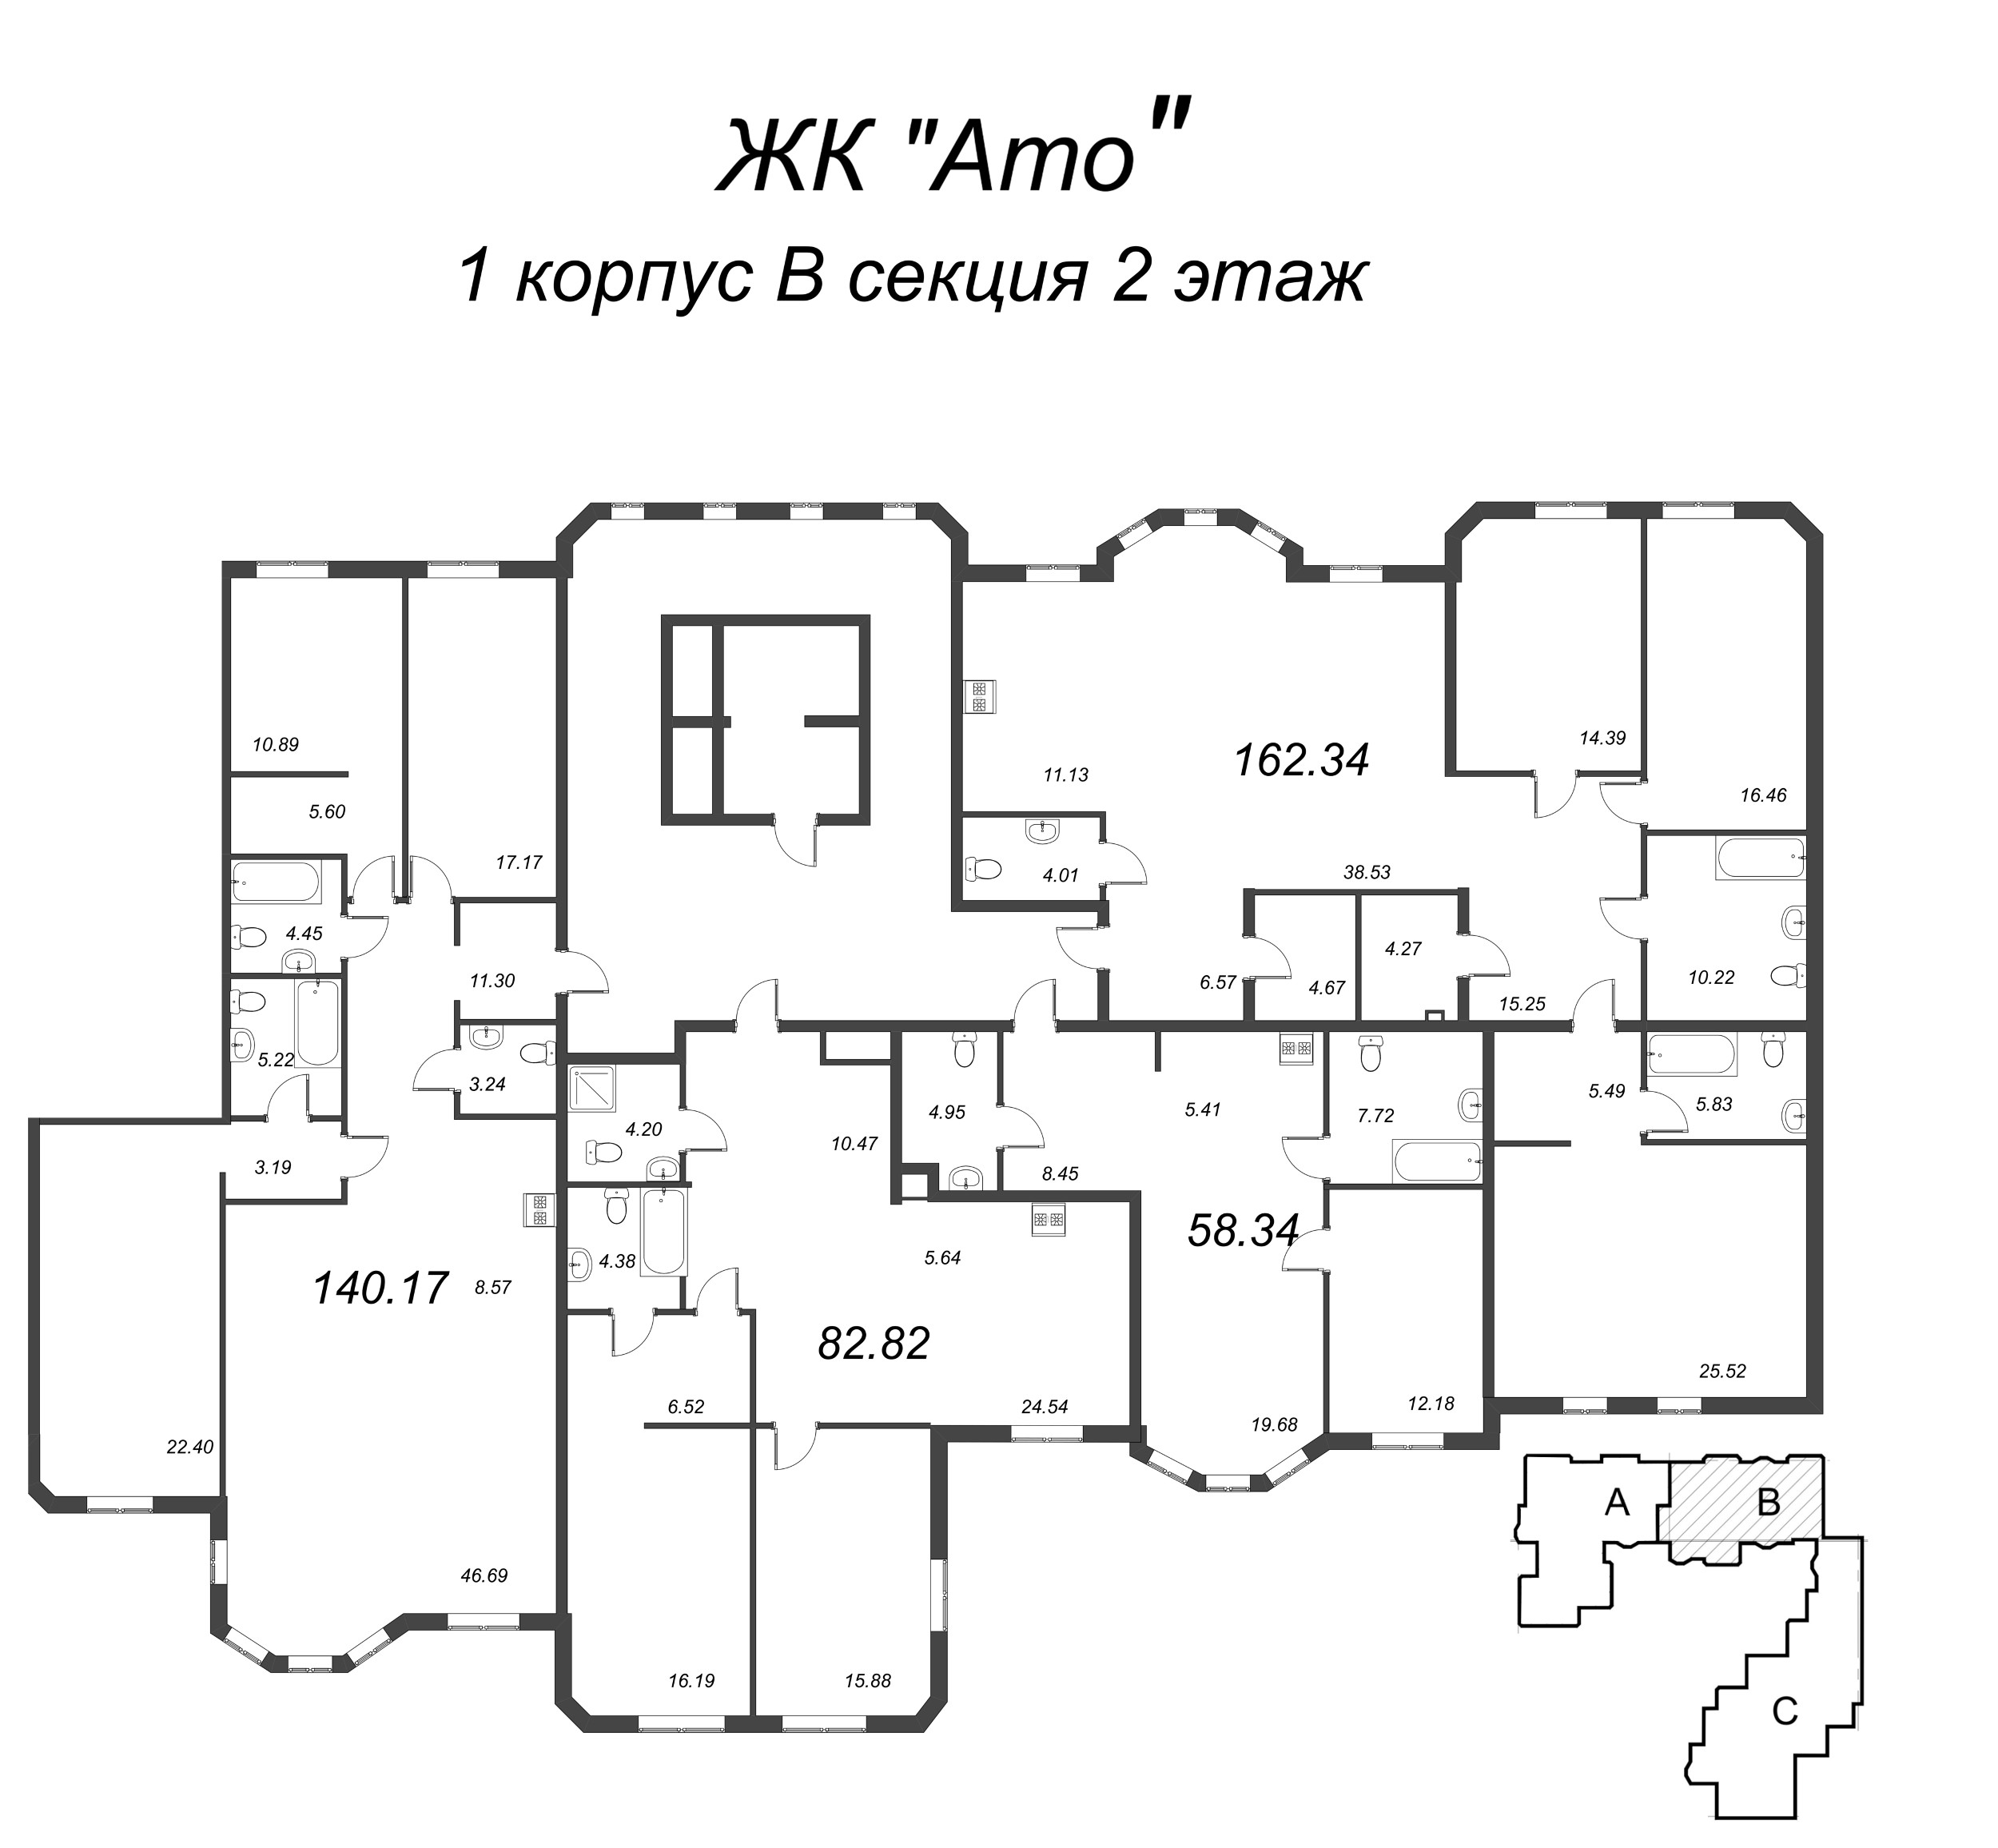 2-комнатная (Евро) квартира, 59.67 м² в ЖК "Amo" - планировка этажа